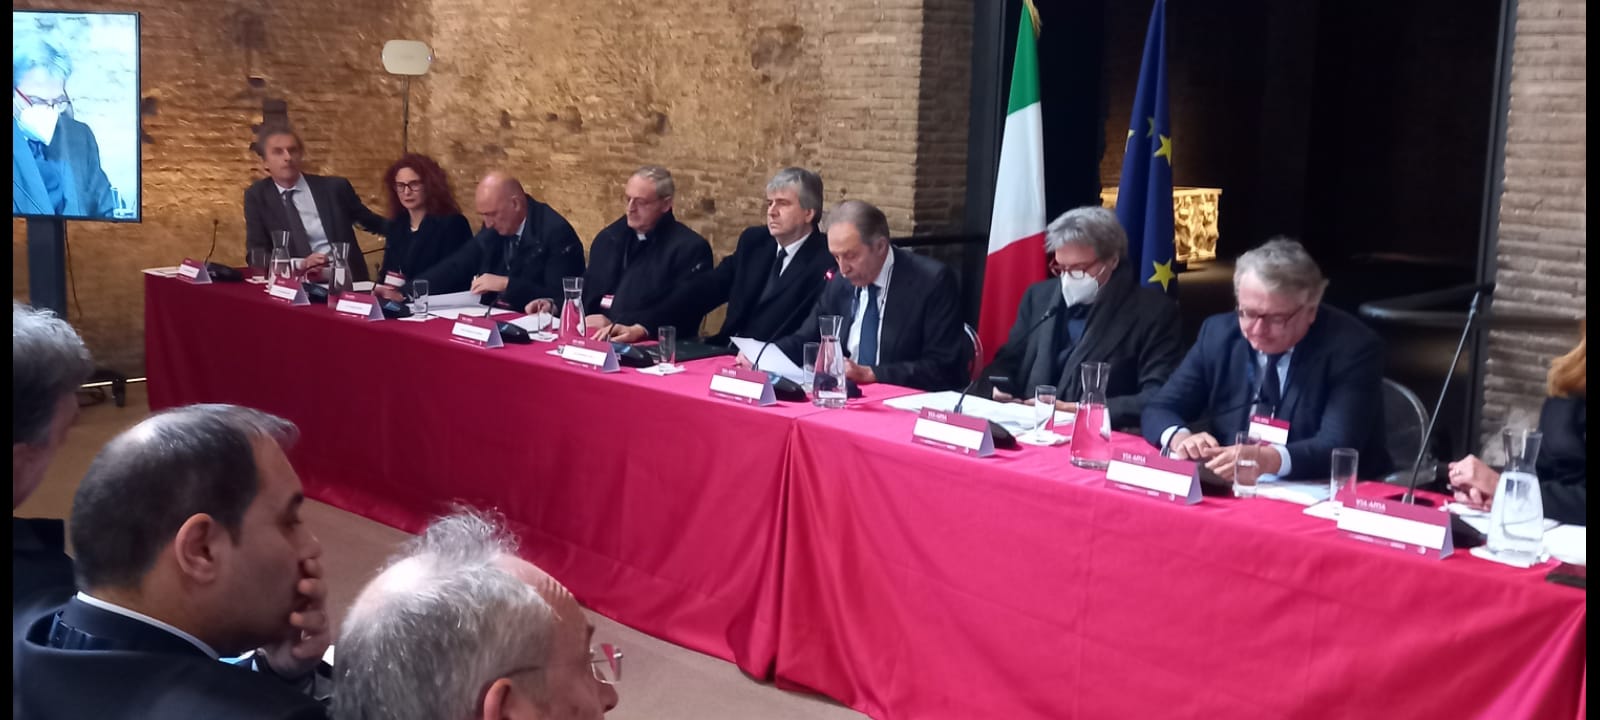 Candidatura UNESCO “Via Appia. Regina viarum”: l’intervento del presidente Bardi